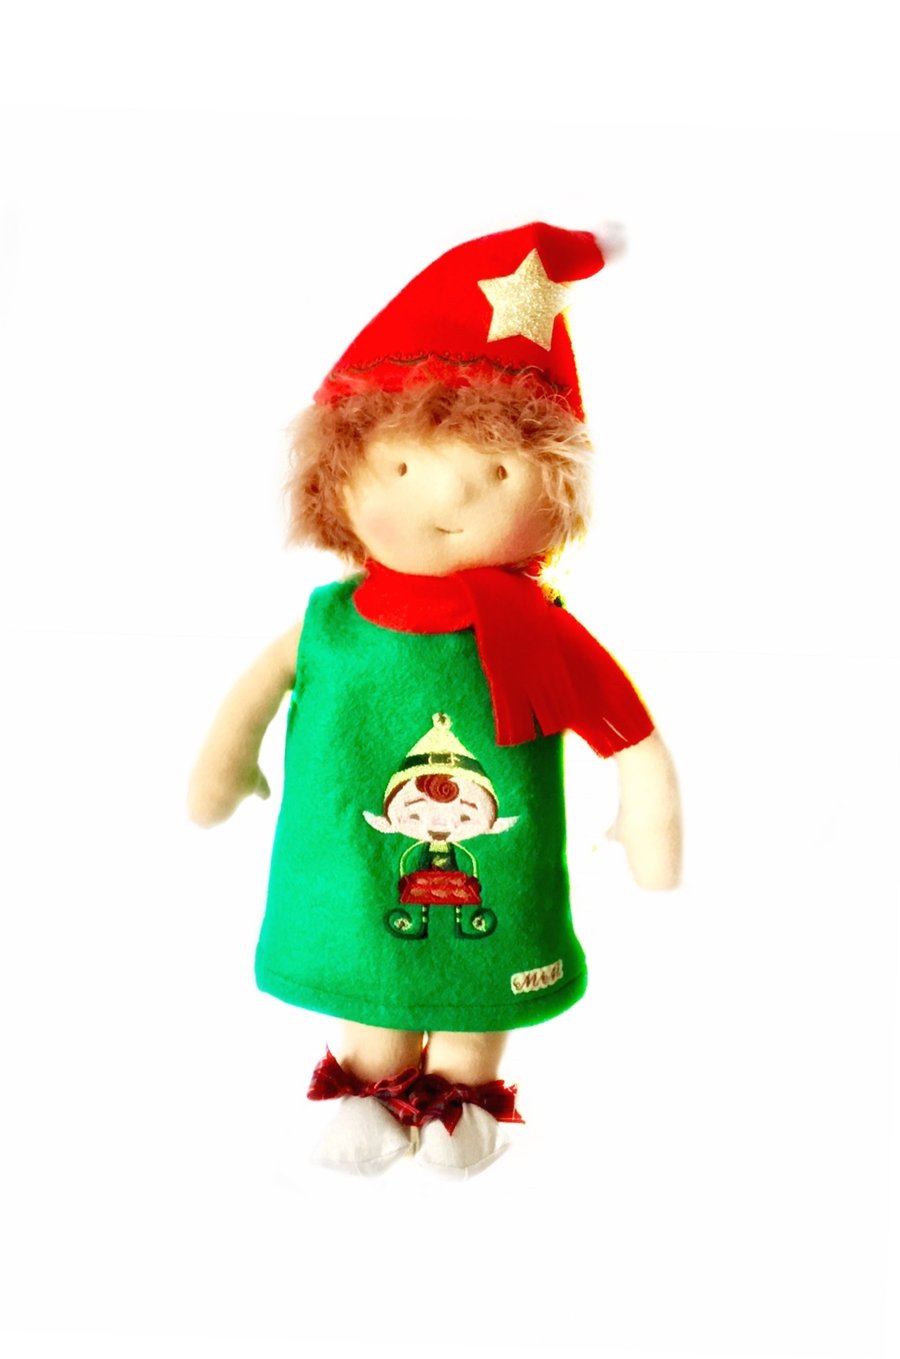 Maisy dressed as an Elf